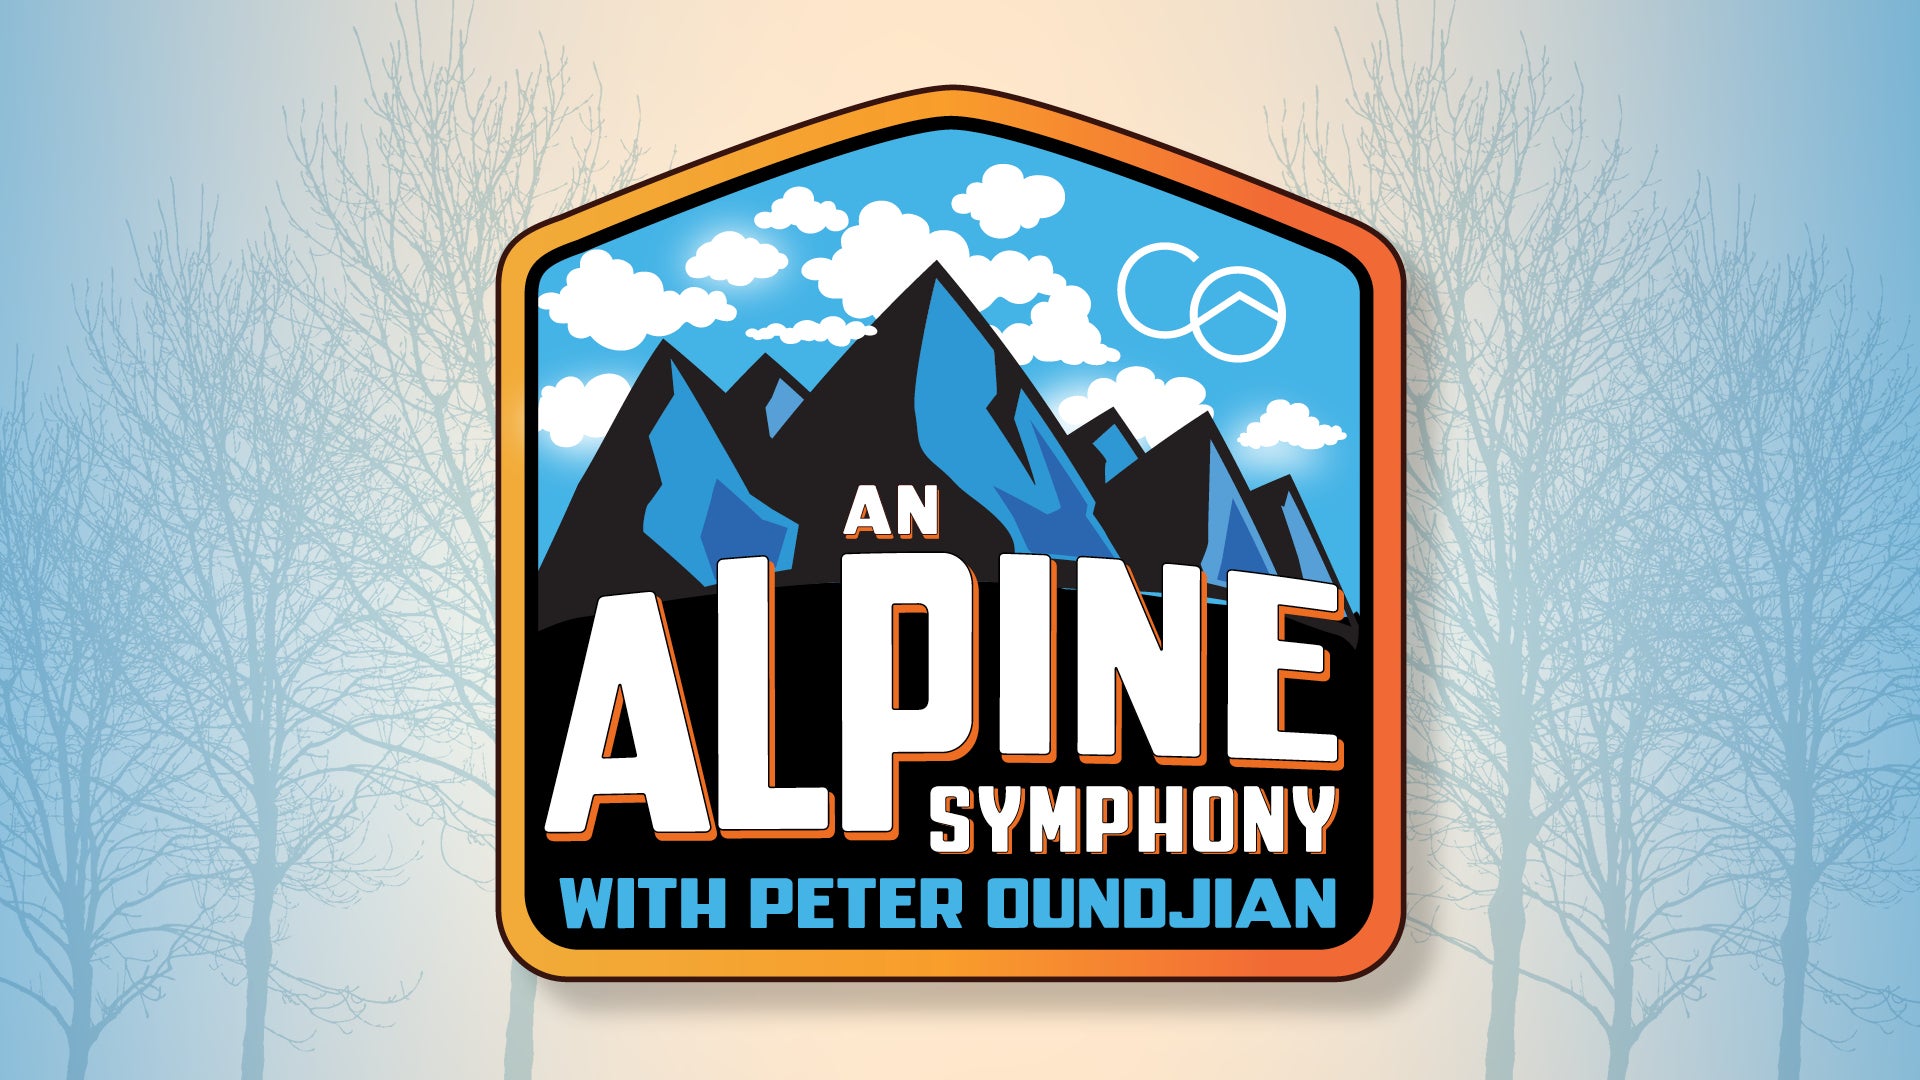 An Alpine Symphony with Peter Oundjian